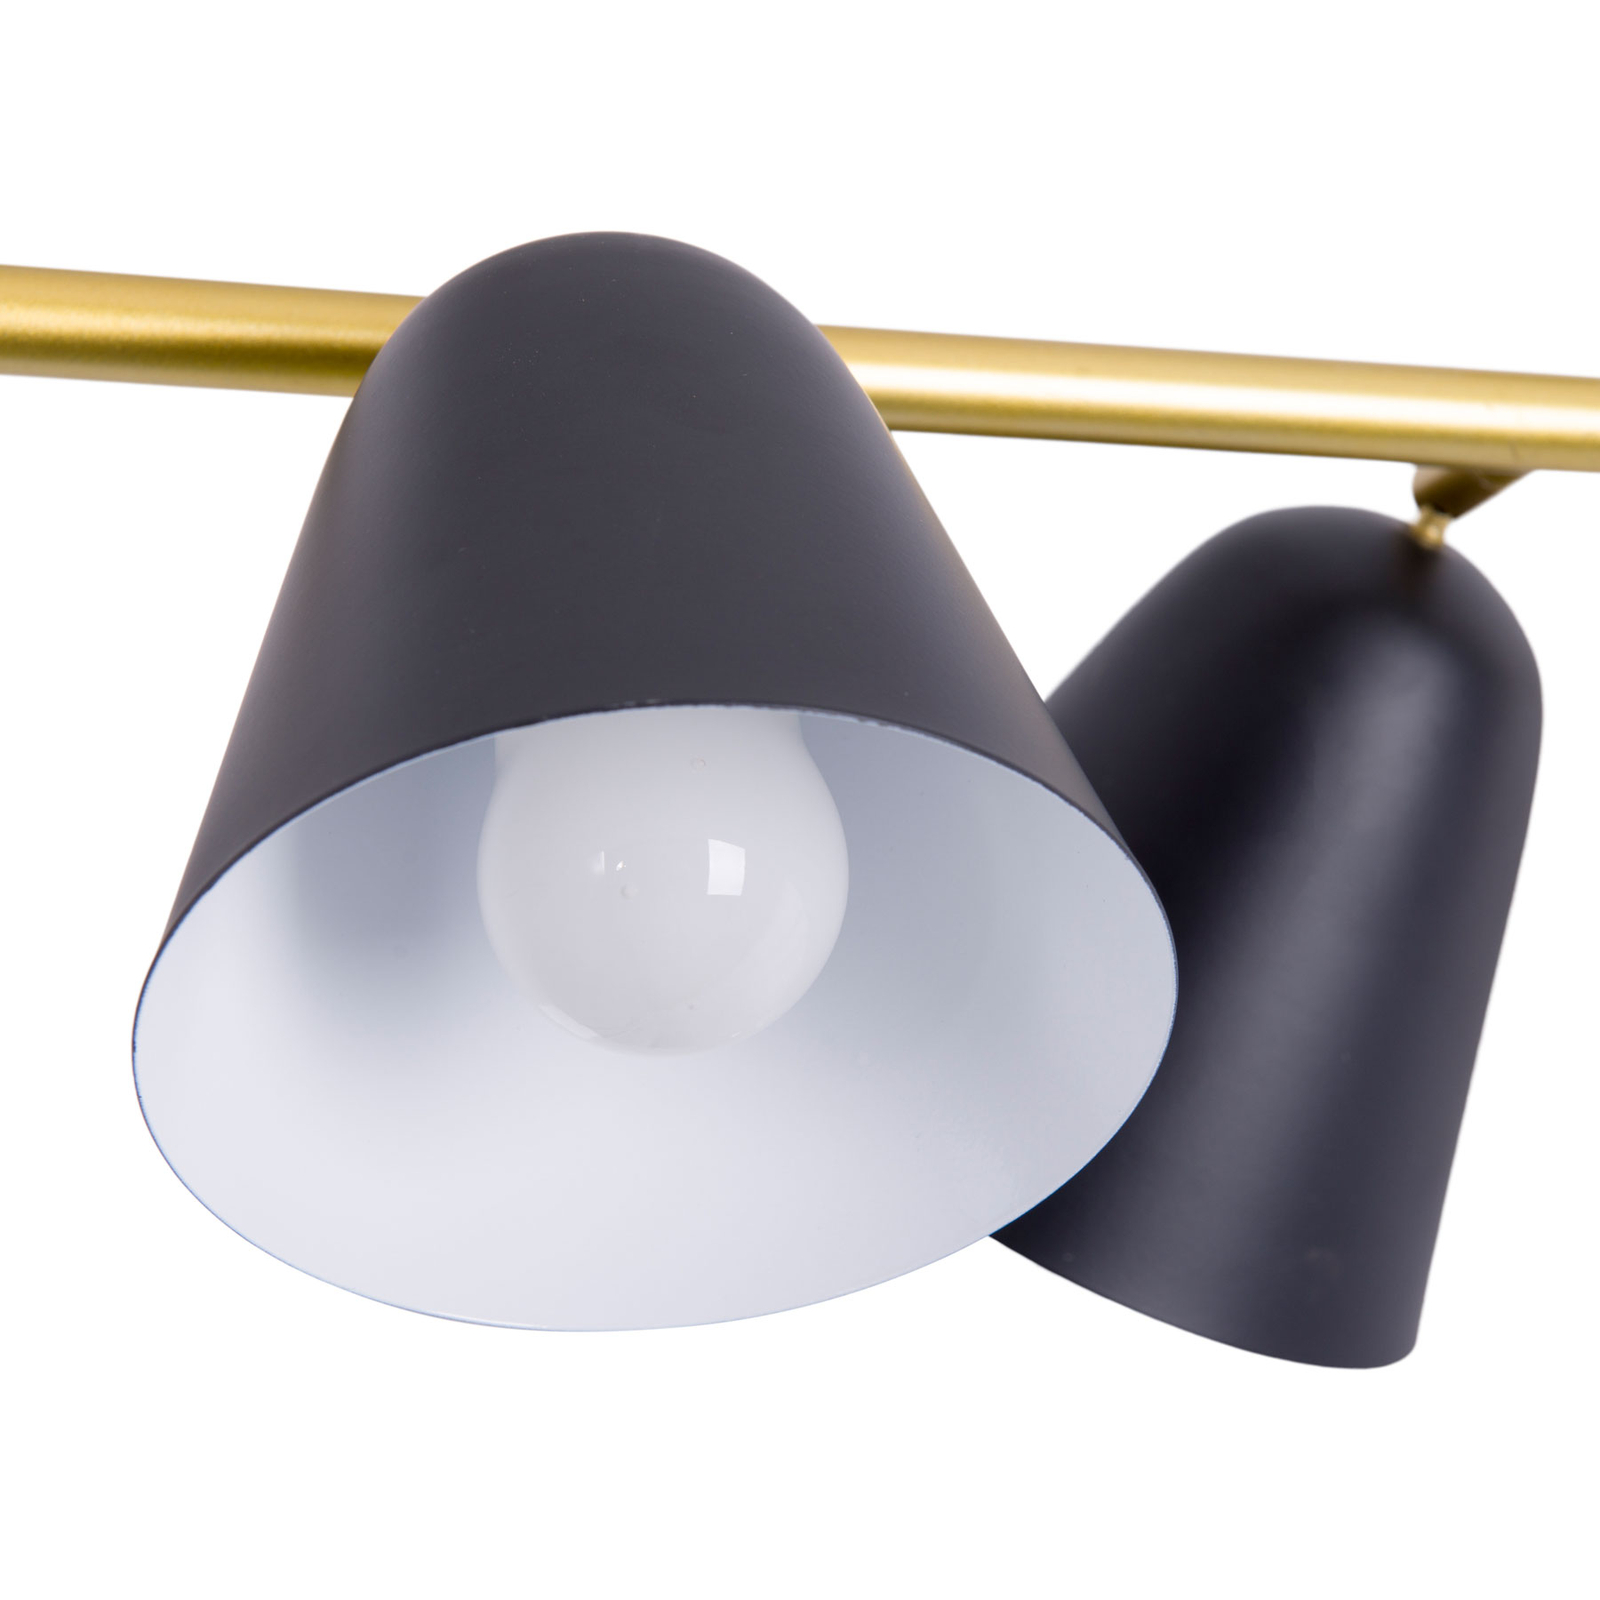 Hanglamp Triton, zwart en goud, 4-lamps